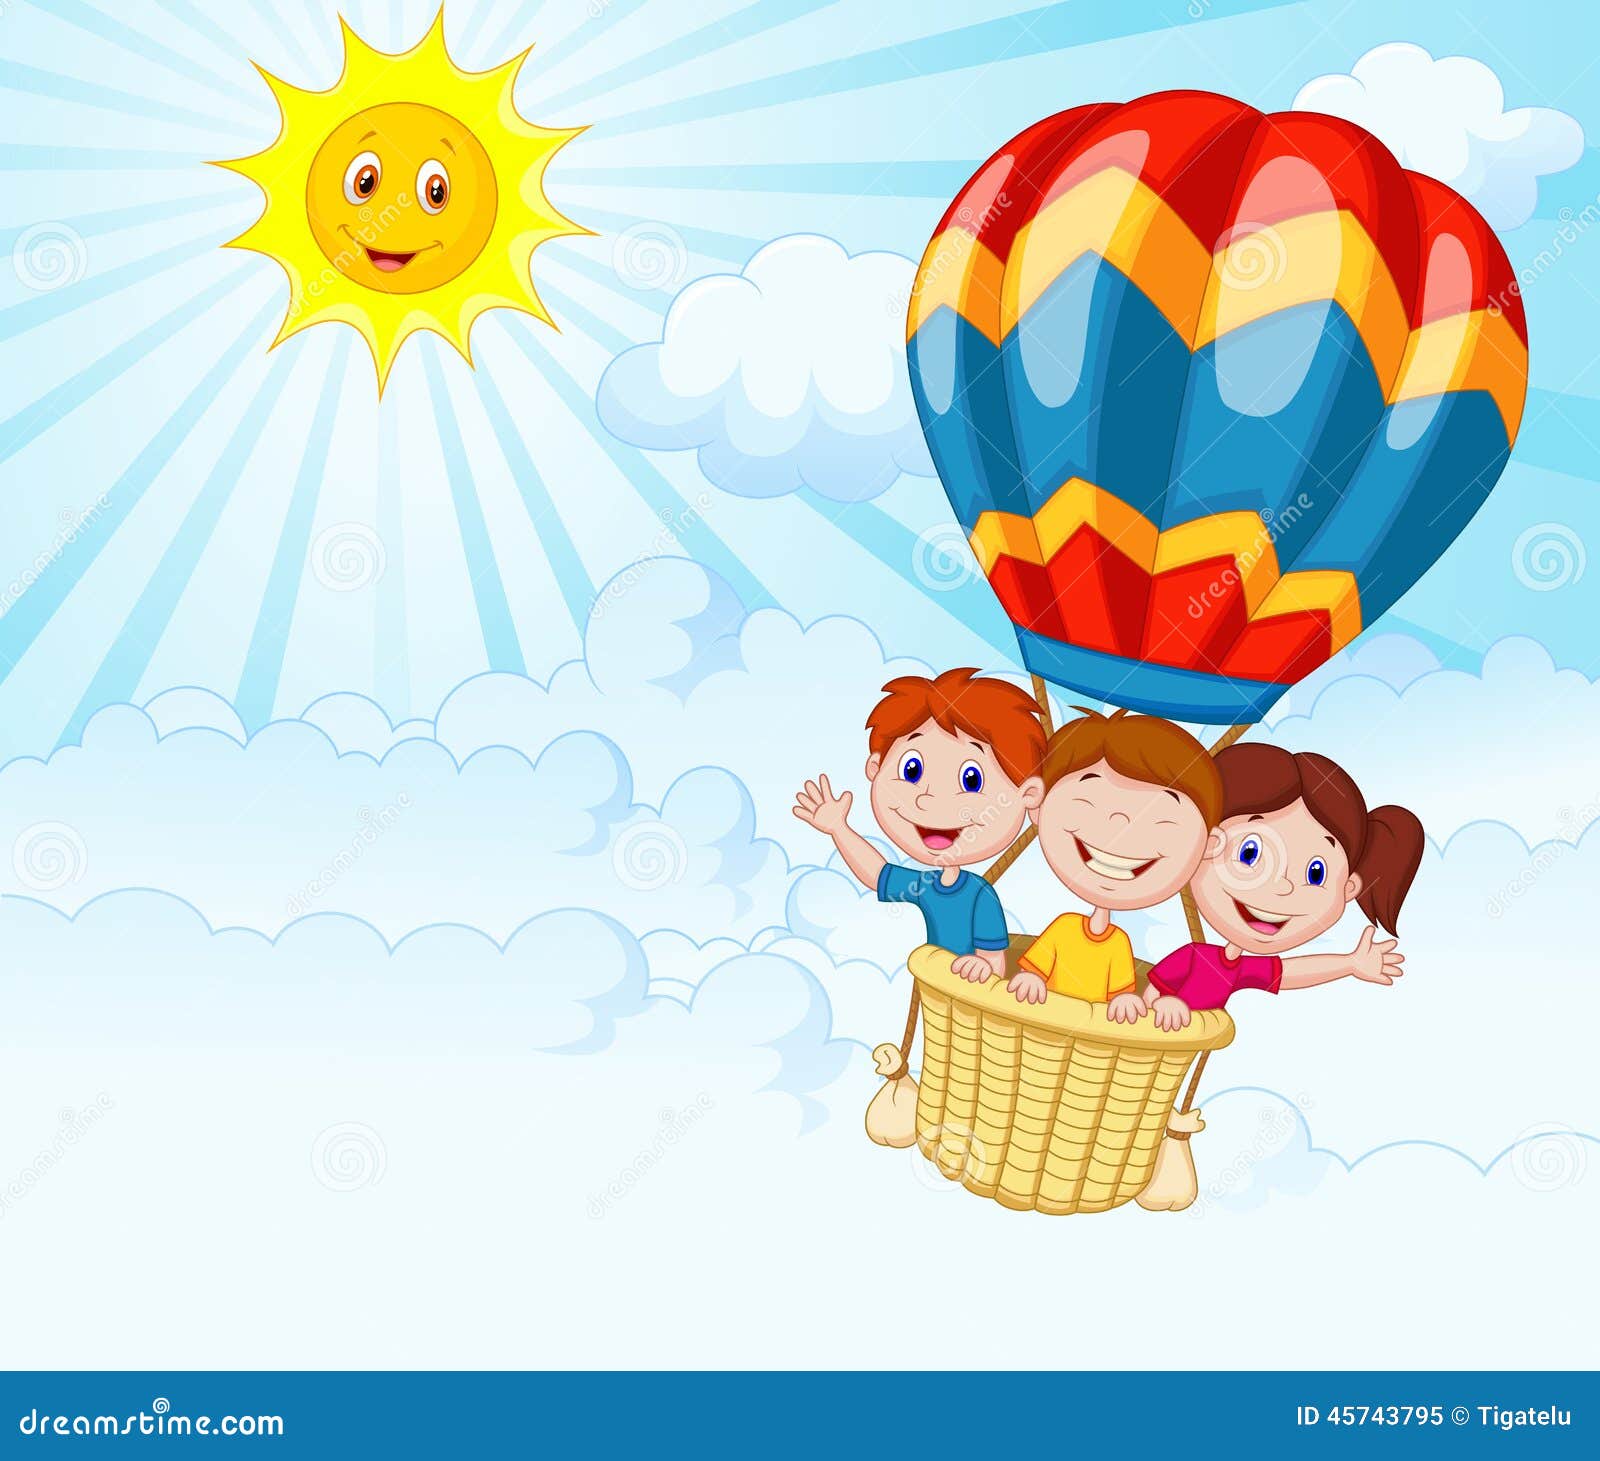 Cartoon kids riding a hot air balloon, Stock vector